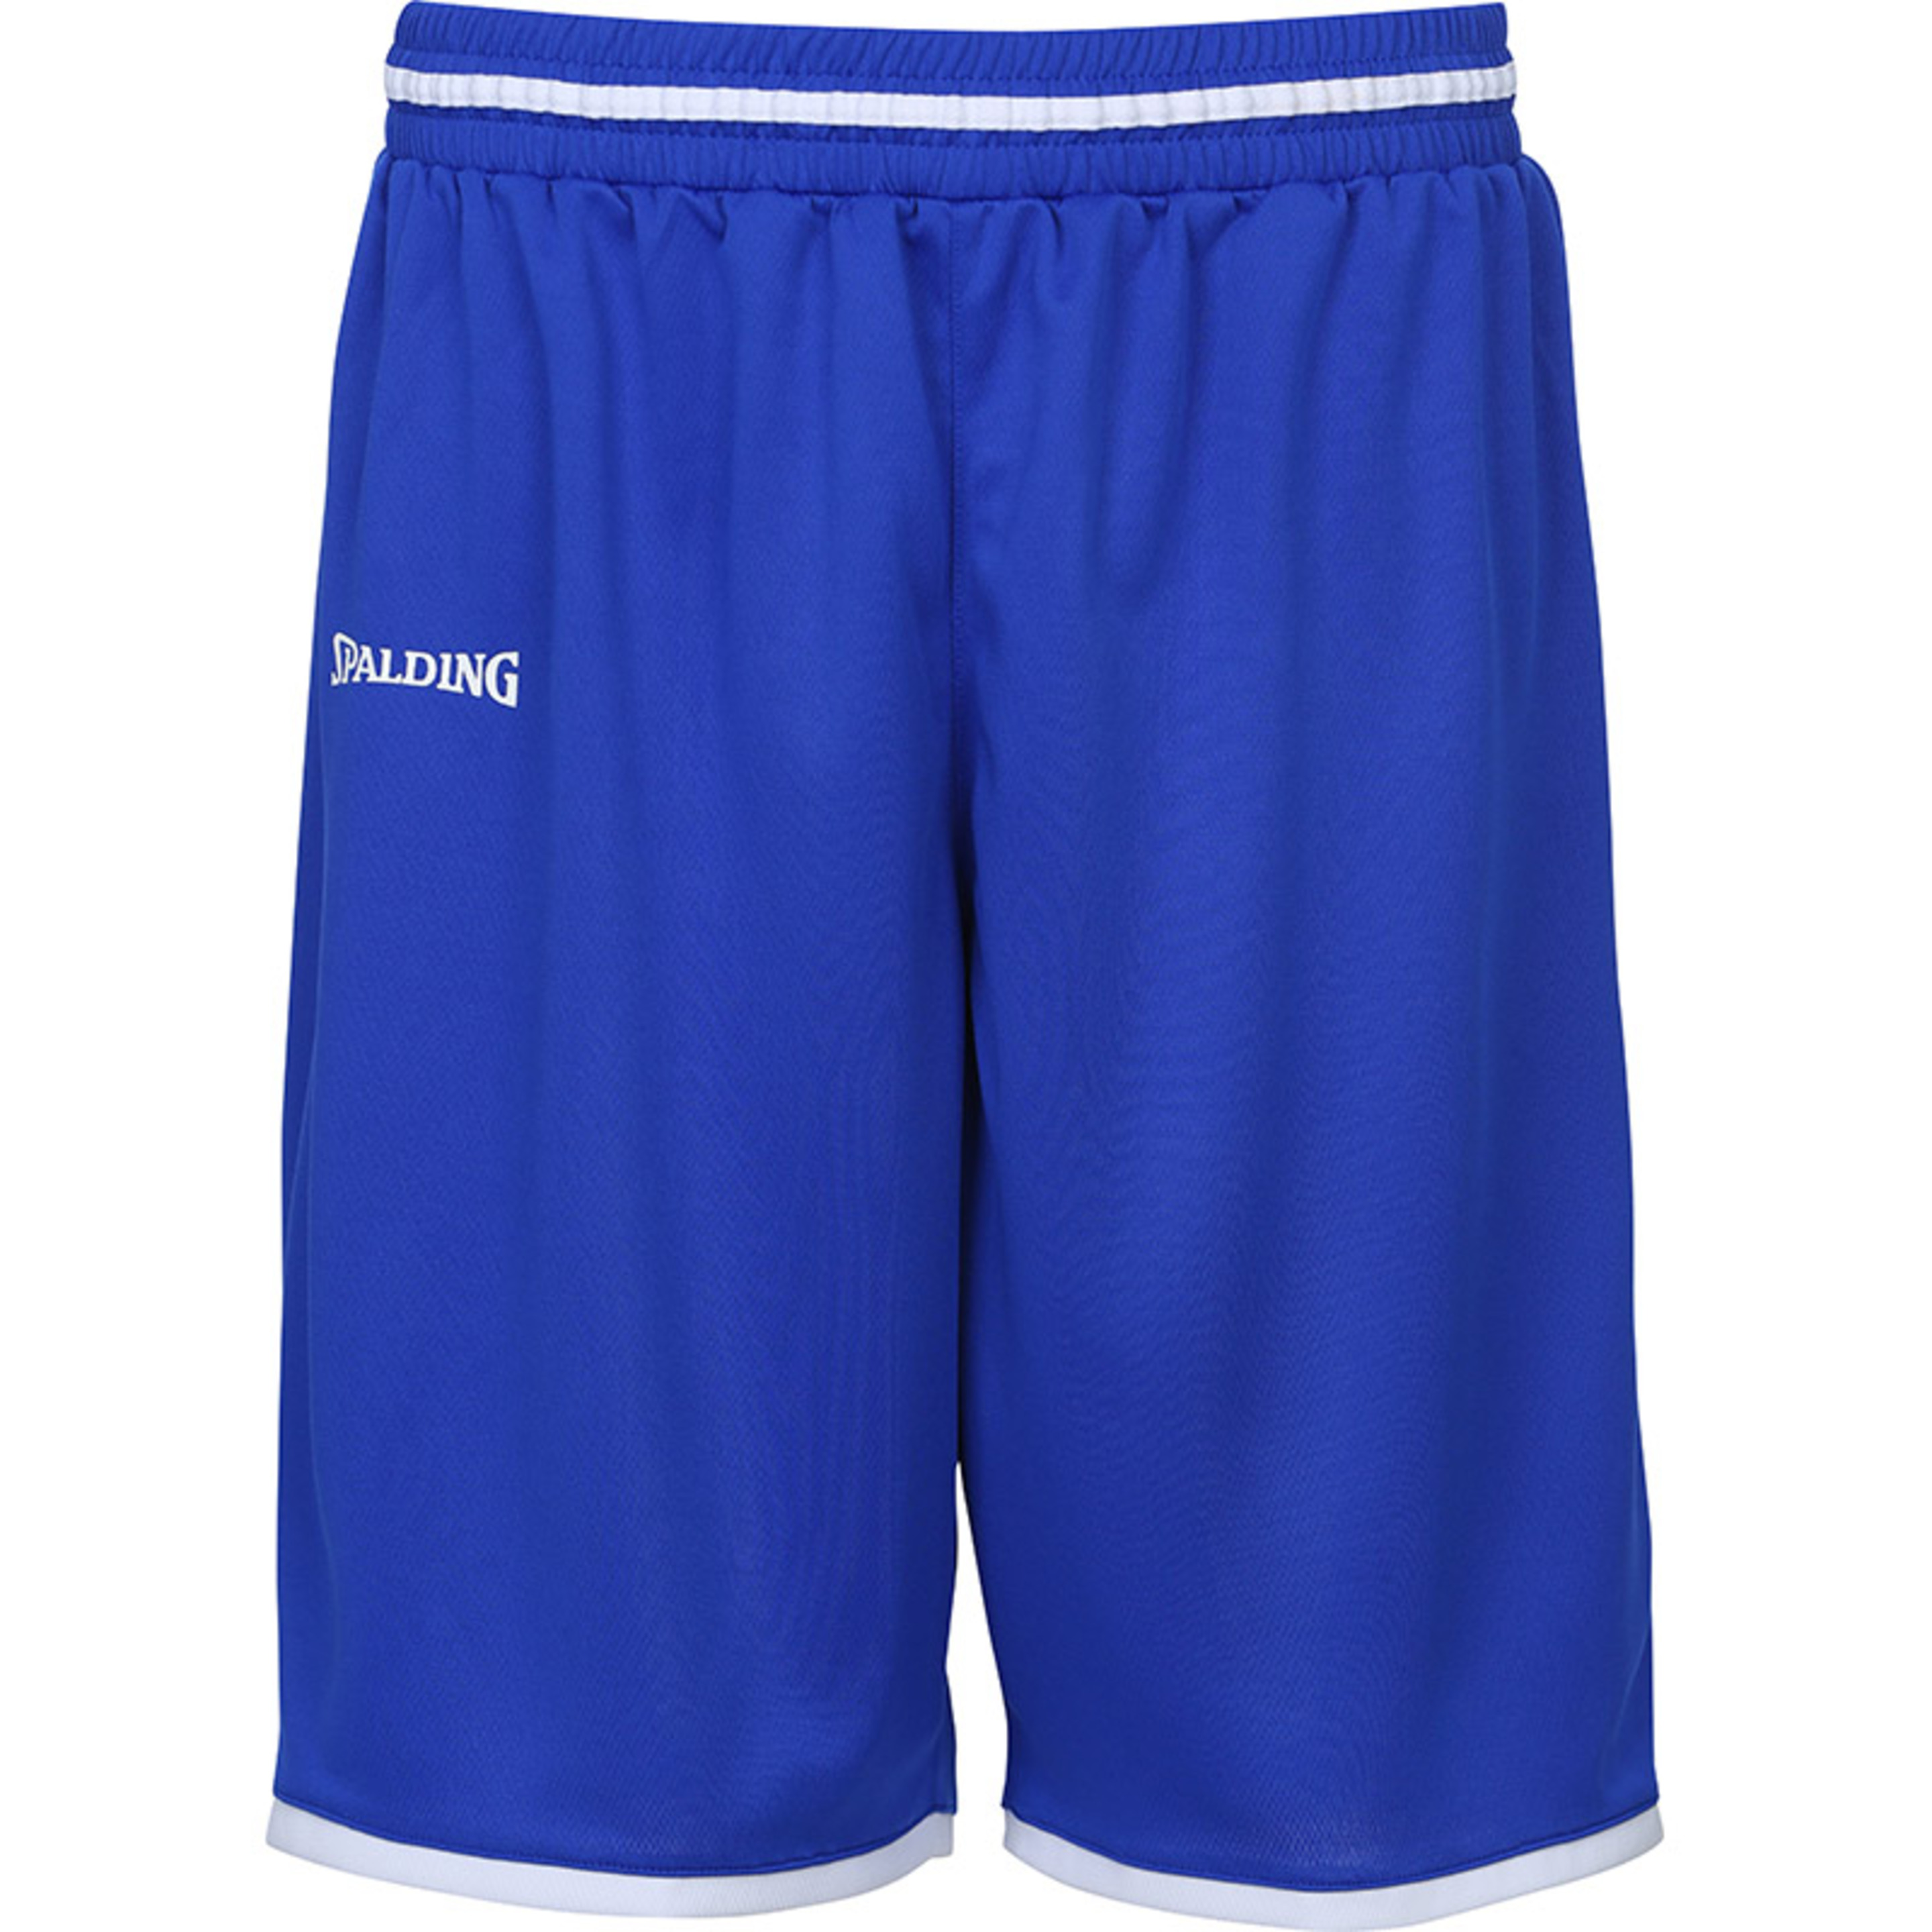 Move Shorts Azul Royal/blanco Spalding